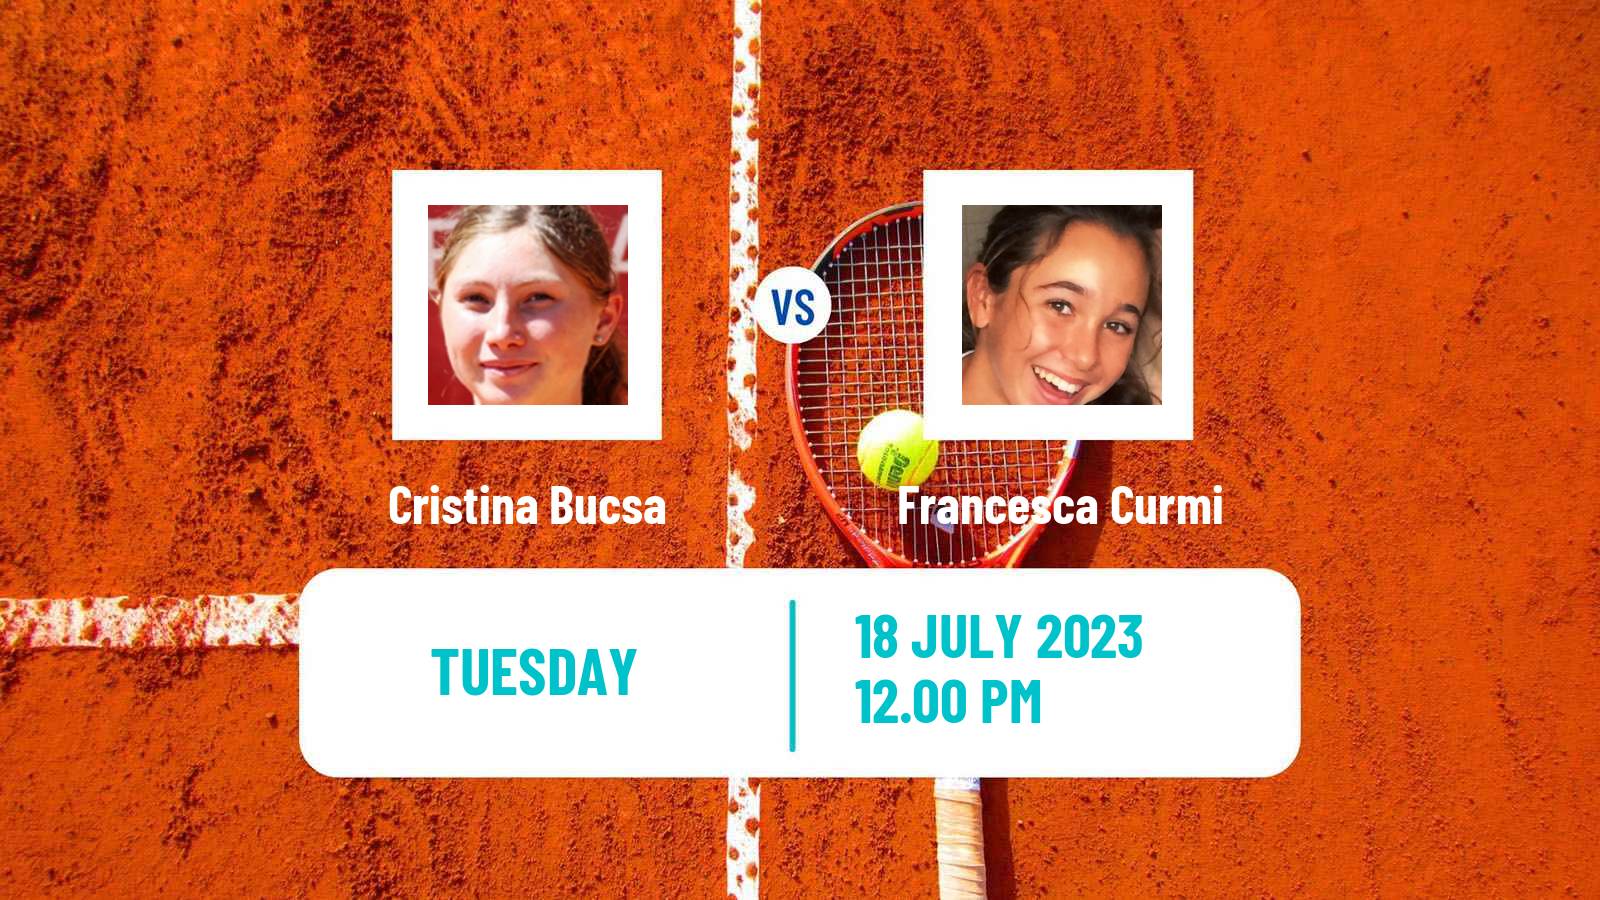 Tennis WTA Palermo Cristina Bucsa - Francesca Curmi